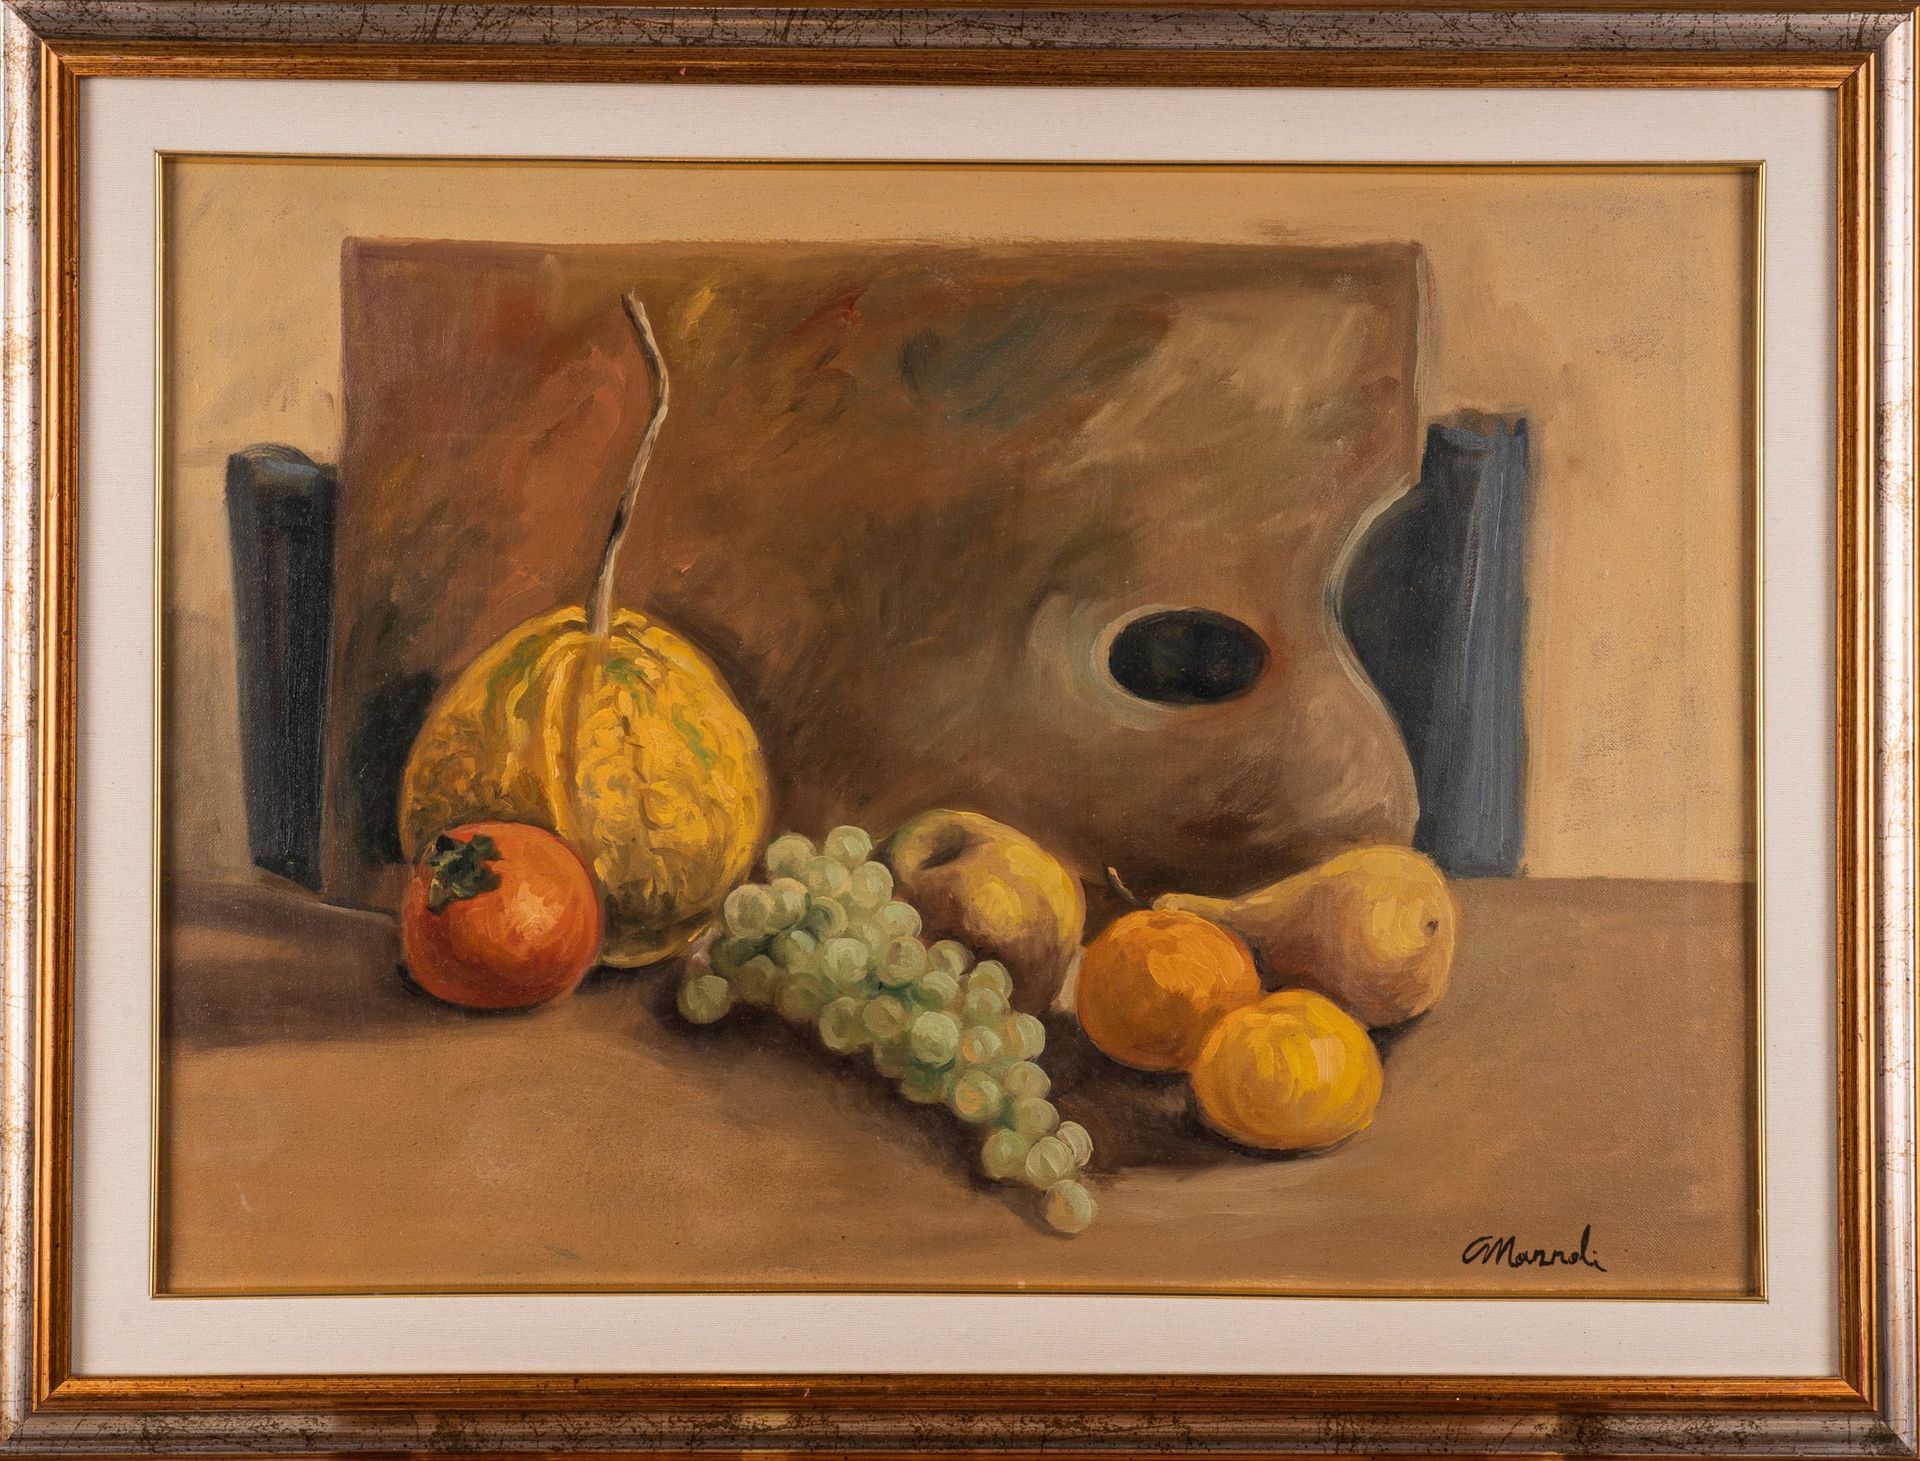 Null 静物

20世纪

布面油画

cm 50x71

右下方有签名 "Carlo Mazzoli"。